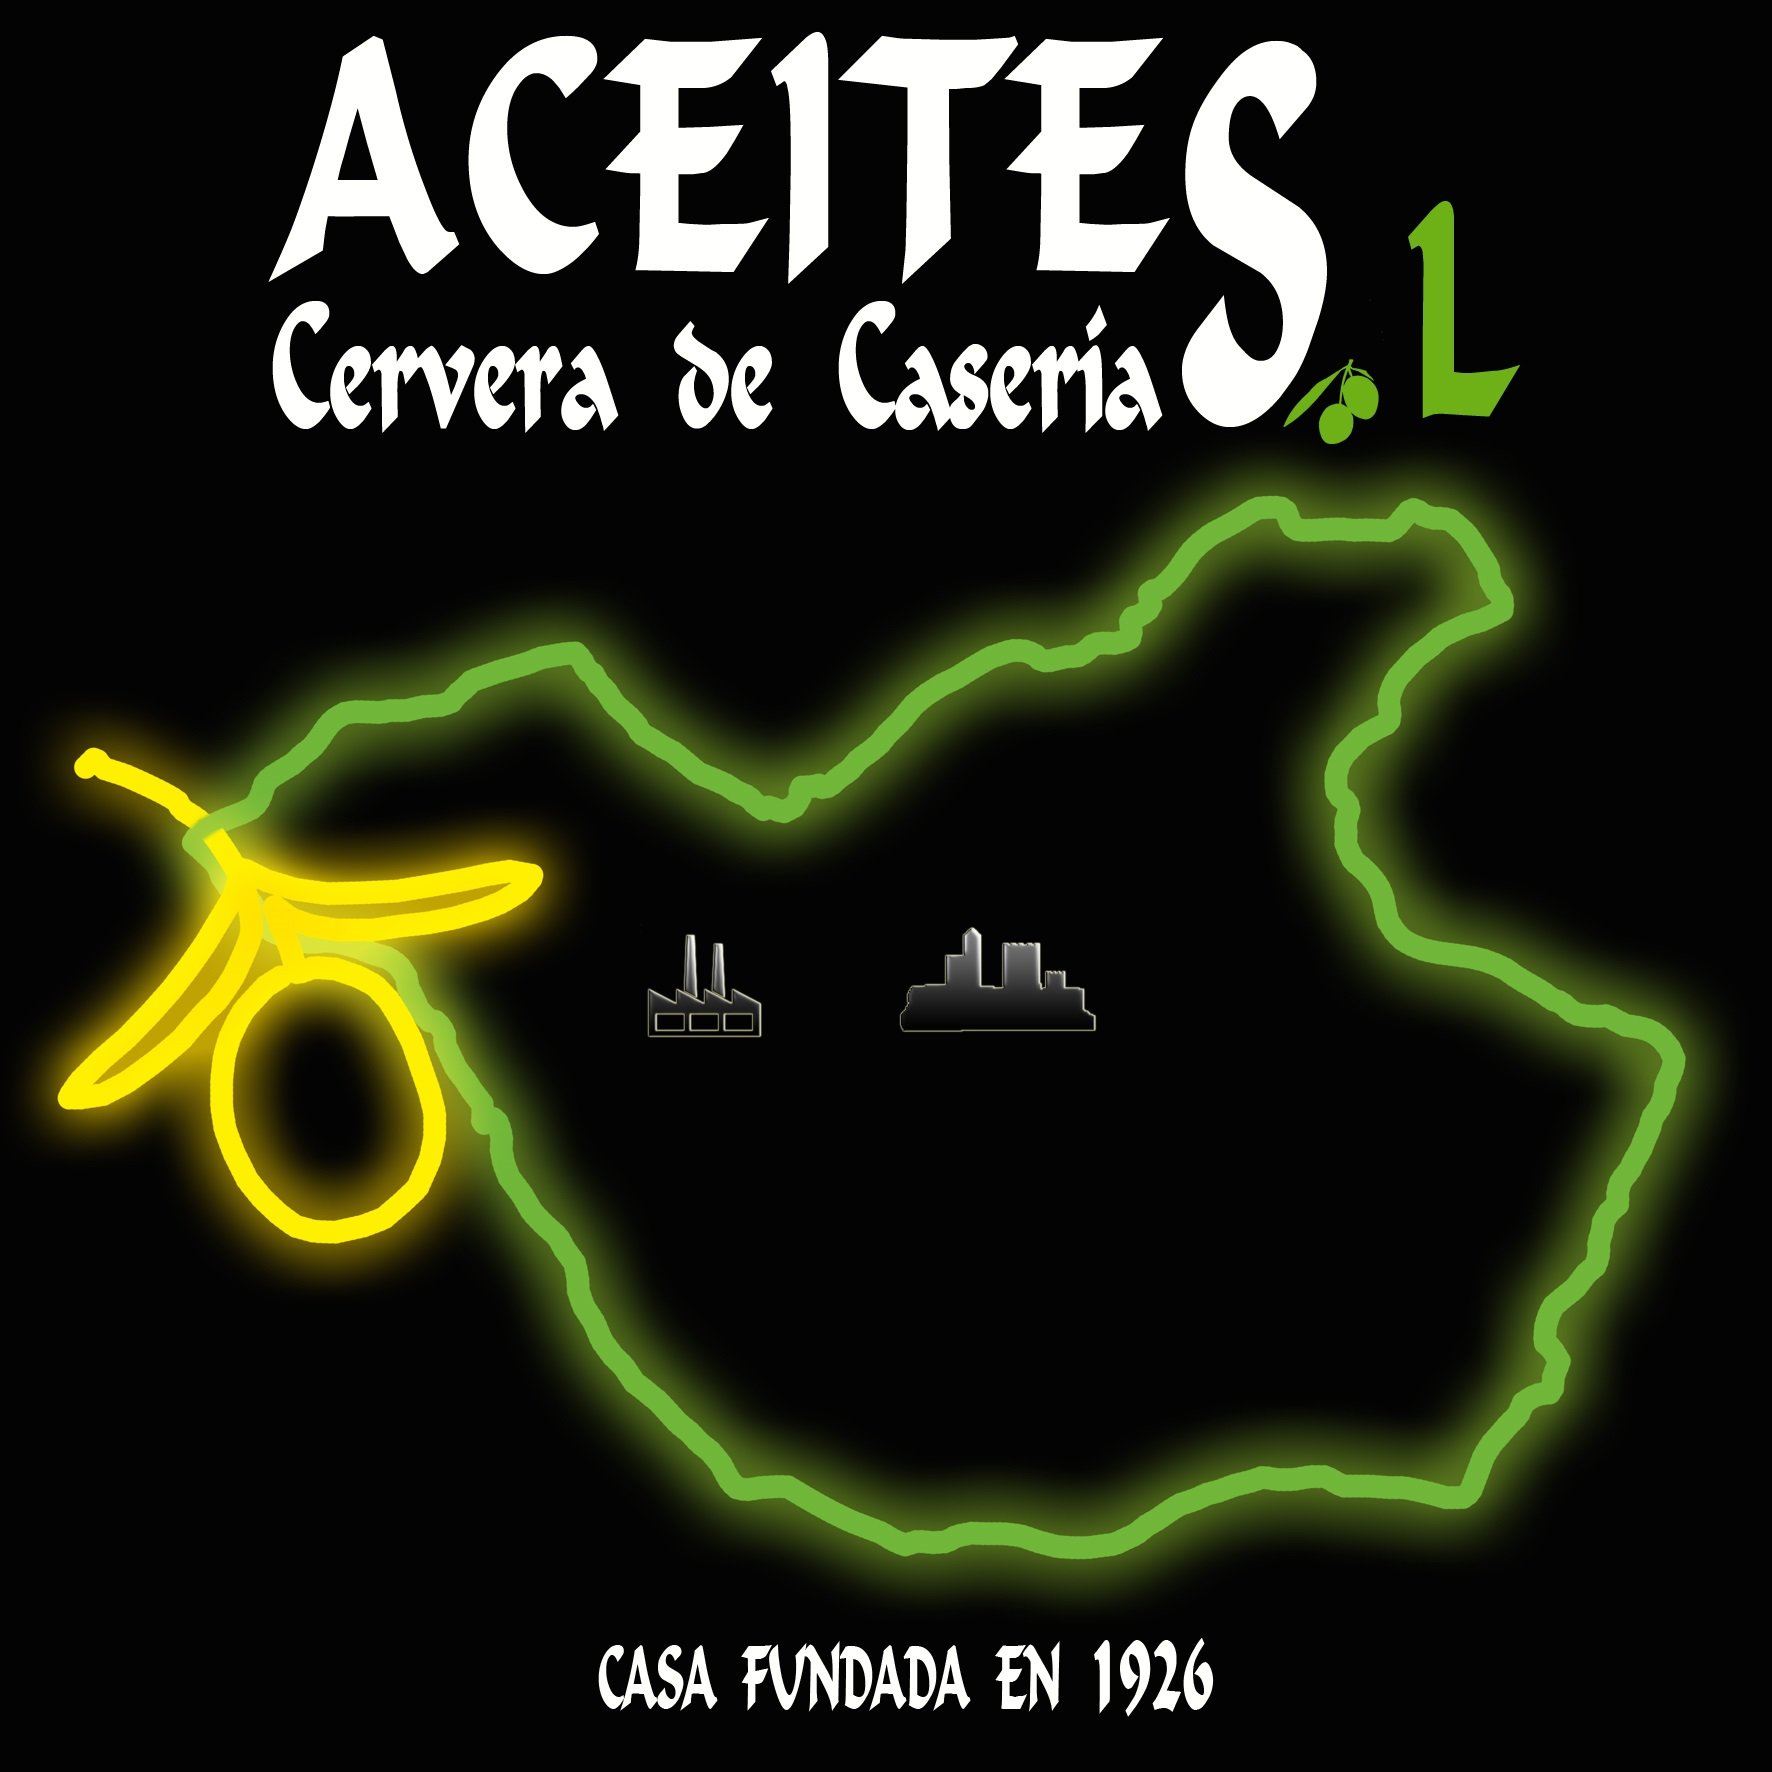 ACEITES CERVERA DE CASERÍAS, S.L.